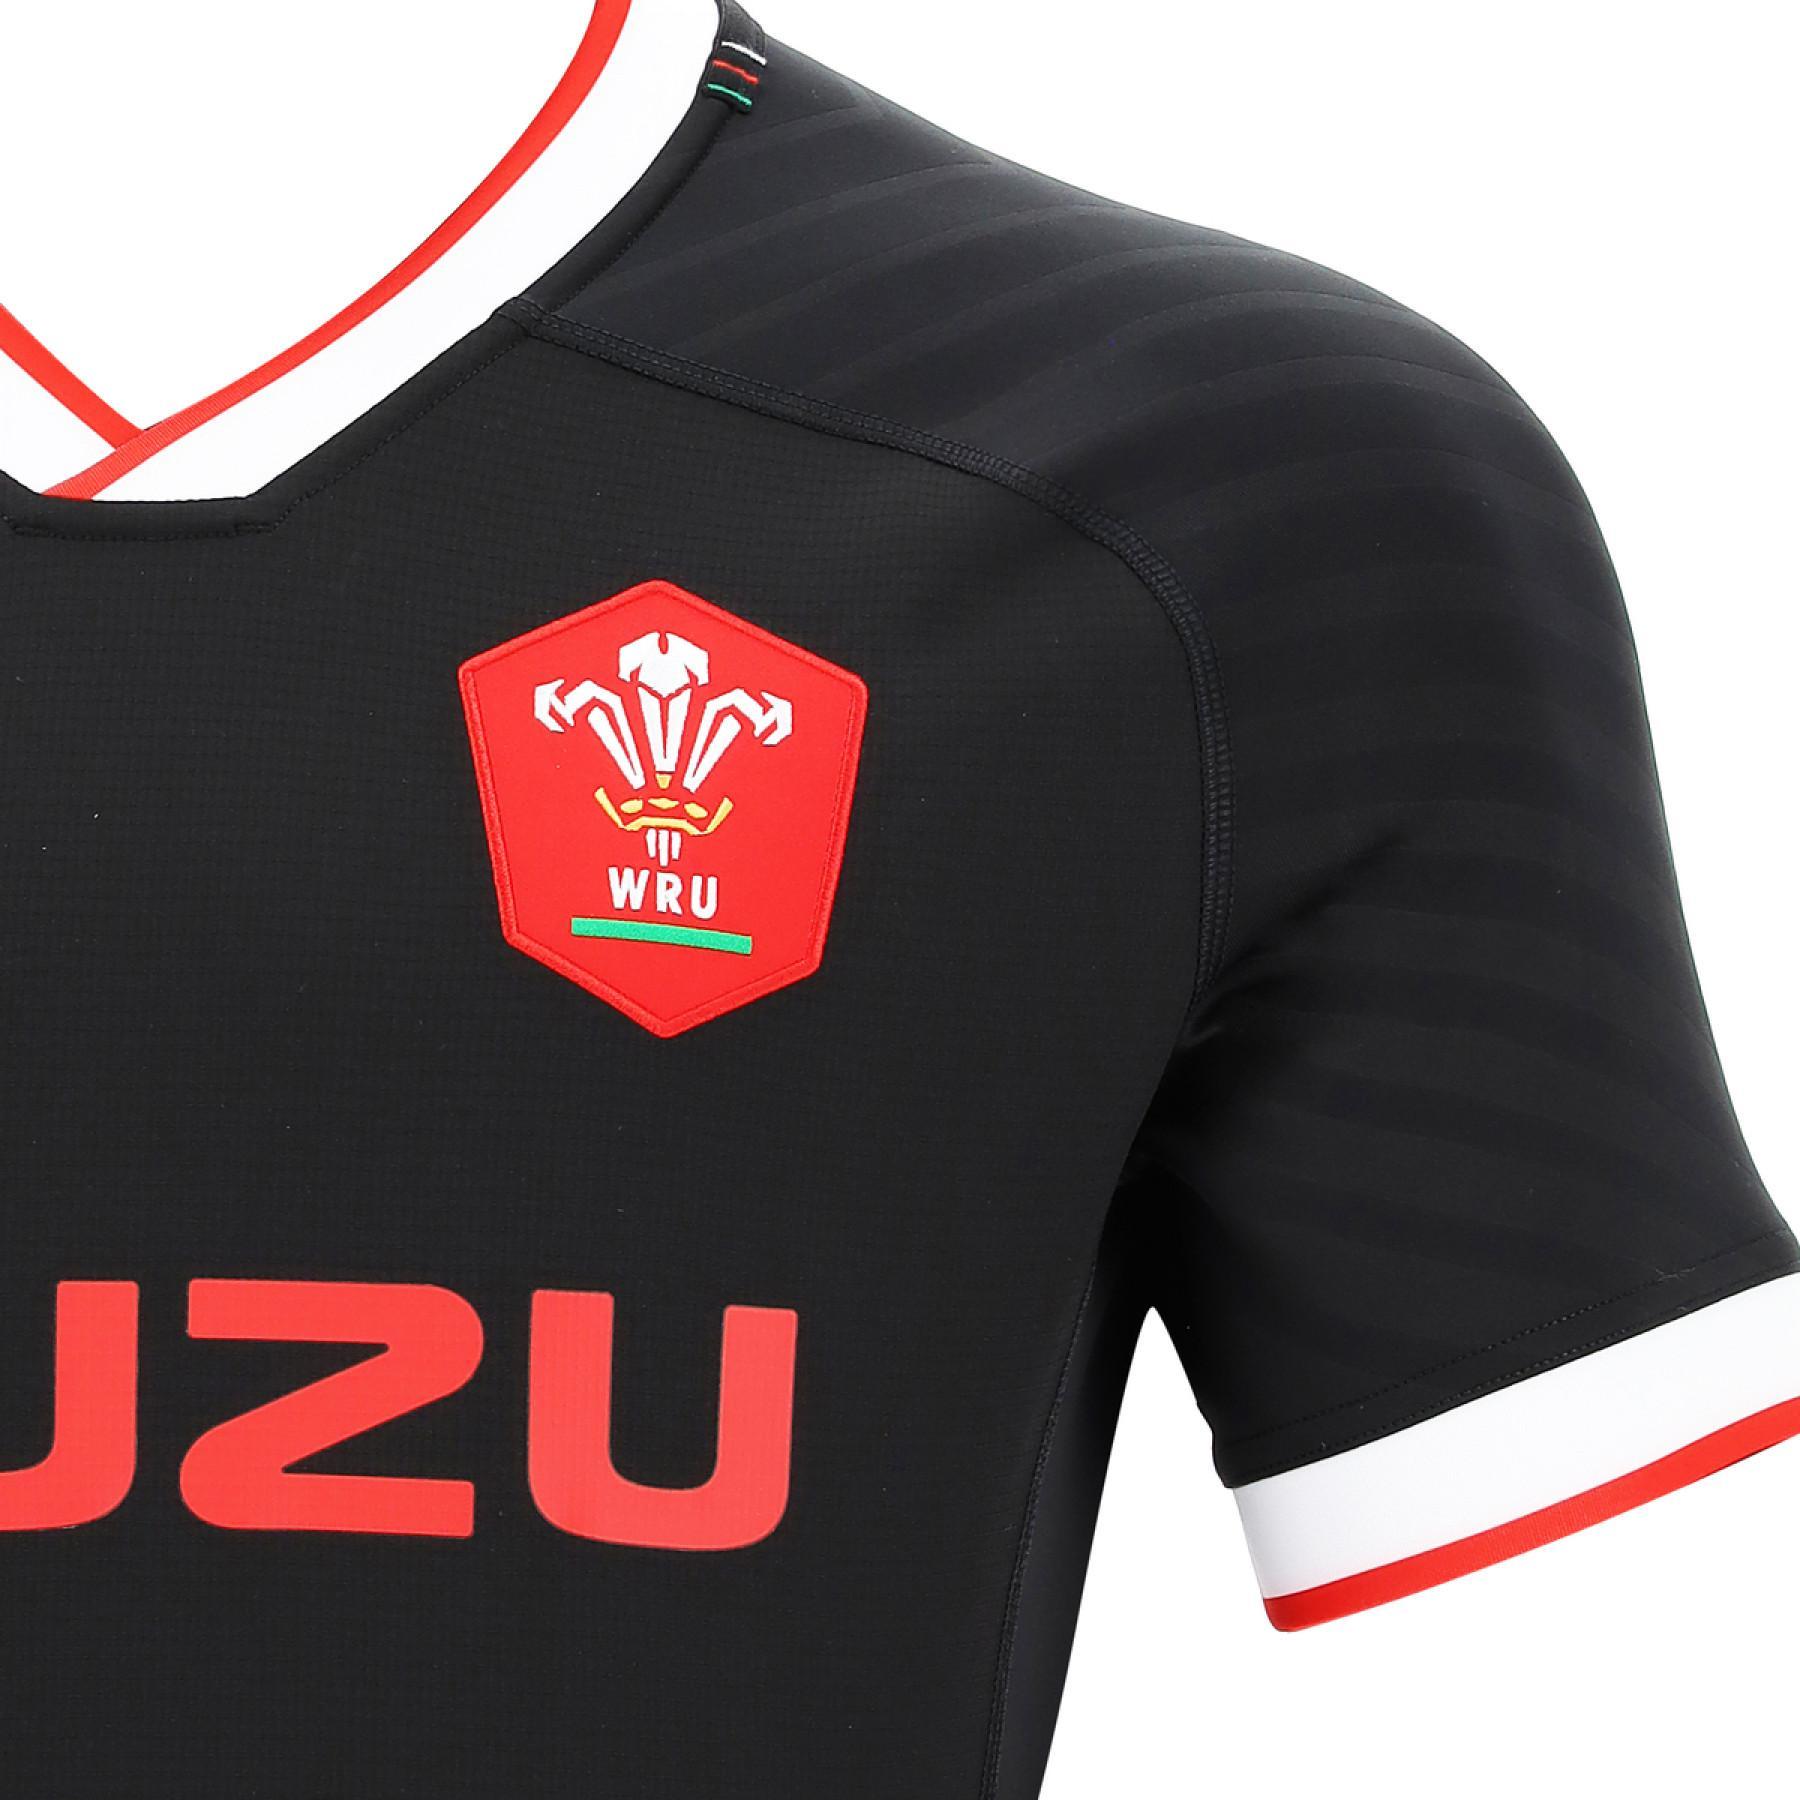 Auténtico jersey de exterior Pays de Galles rugby 2020/21